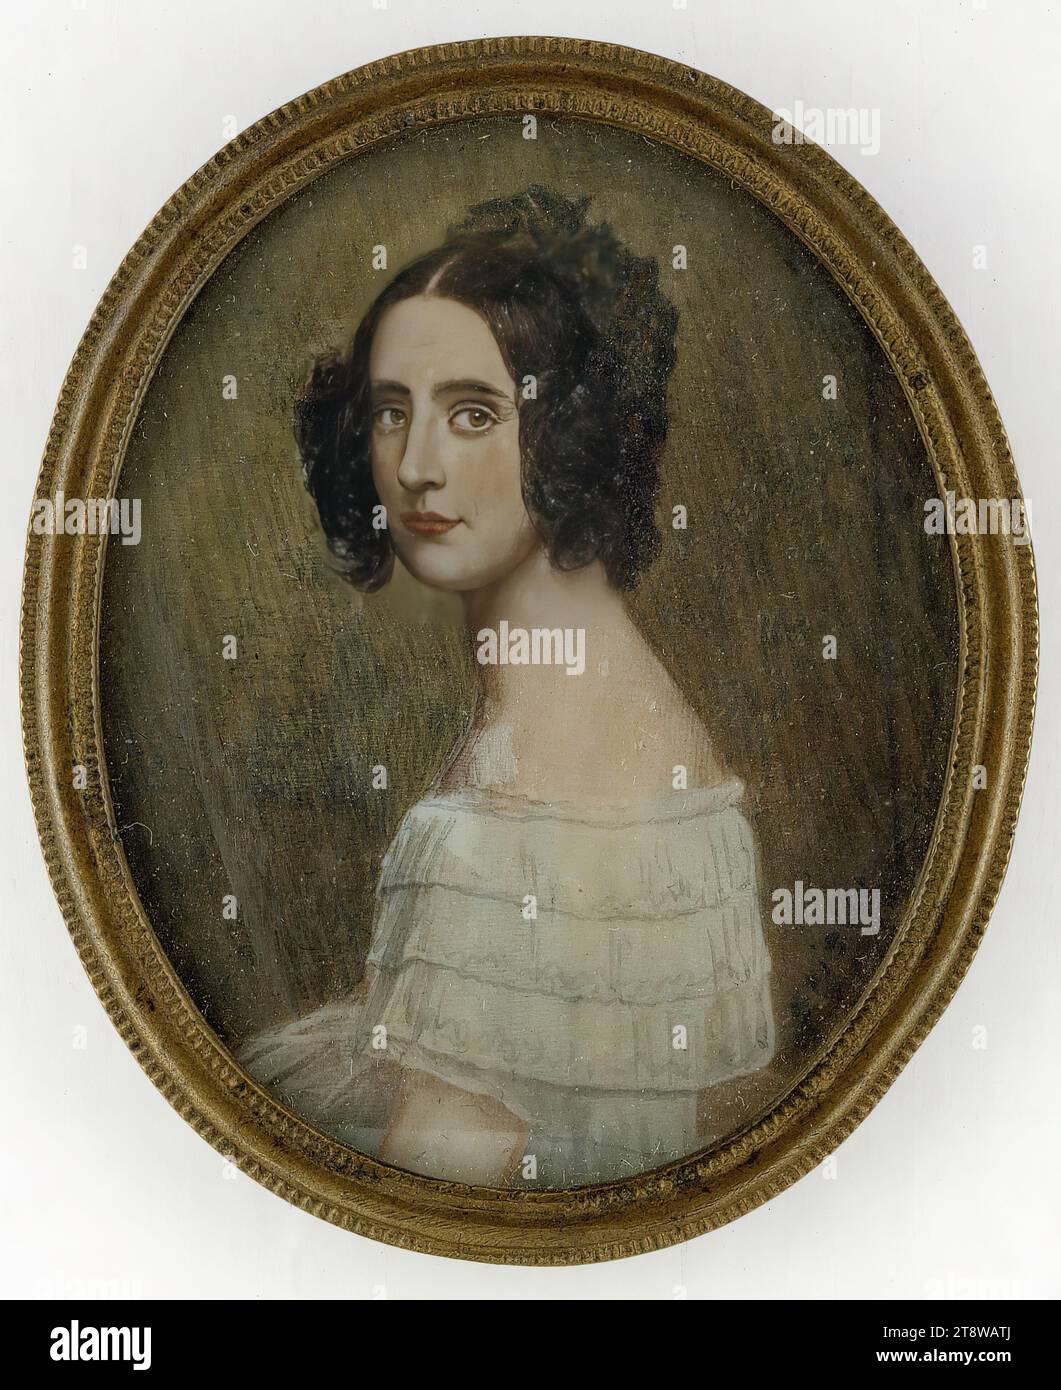 Joseph Karl Stieler, 1781, Magonza, 1858, Monaco di Baviera, ritratto di una signora, 1840, 5,3 x 4,3 cm, guazzo, avorio Foto Stock